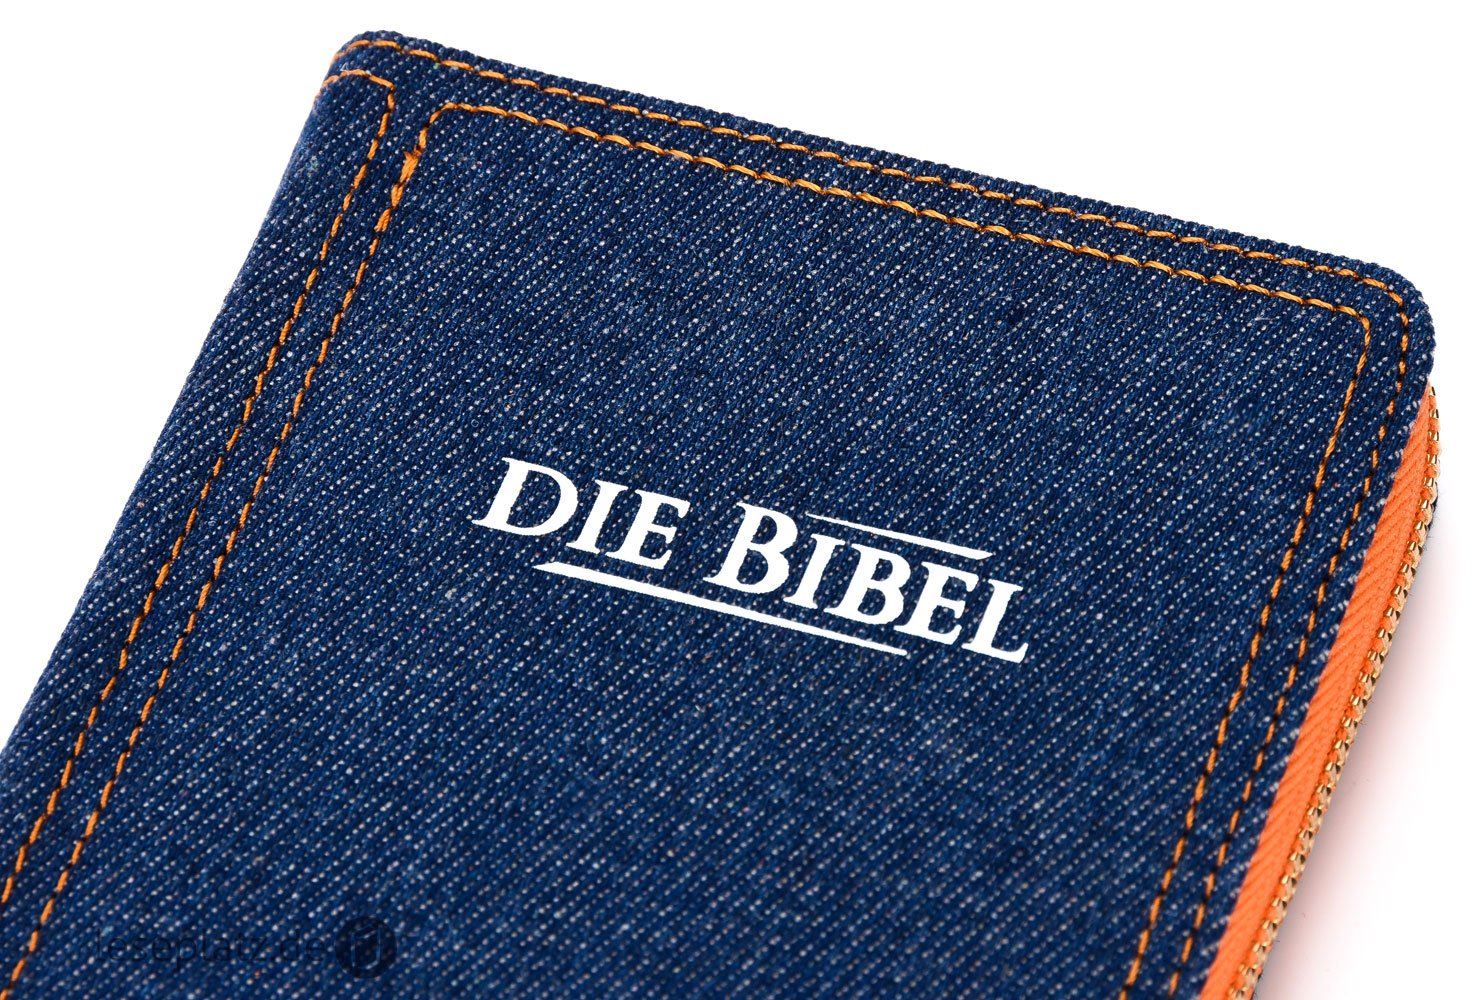 Elberfelder 2003 - Pocketausgabe / Jeans / Reißverschluss